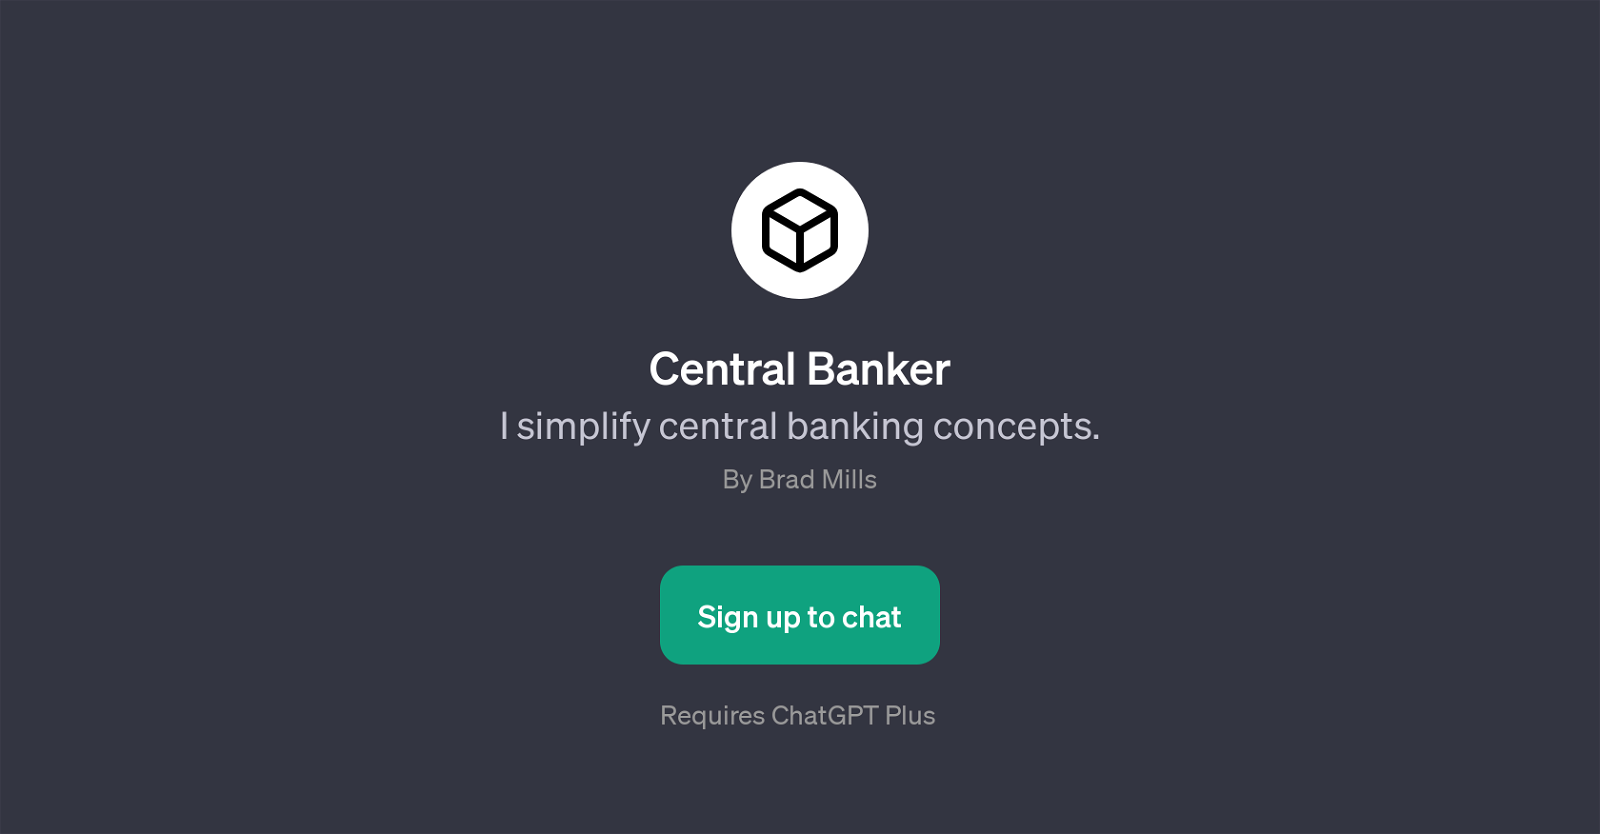 Central Banker website